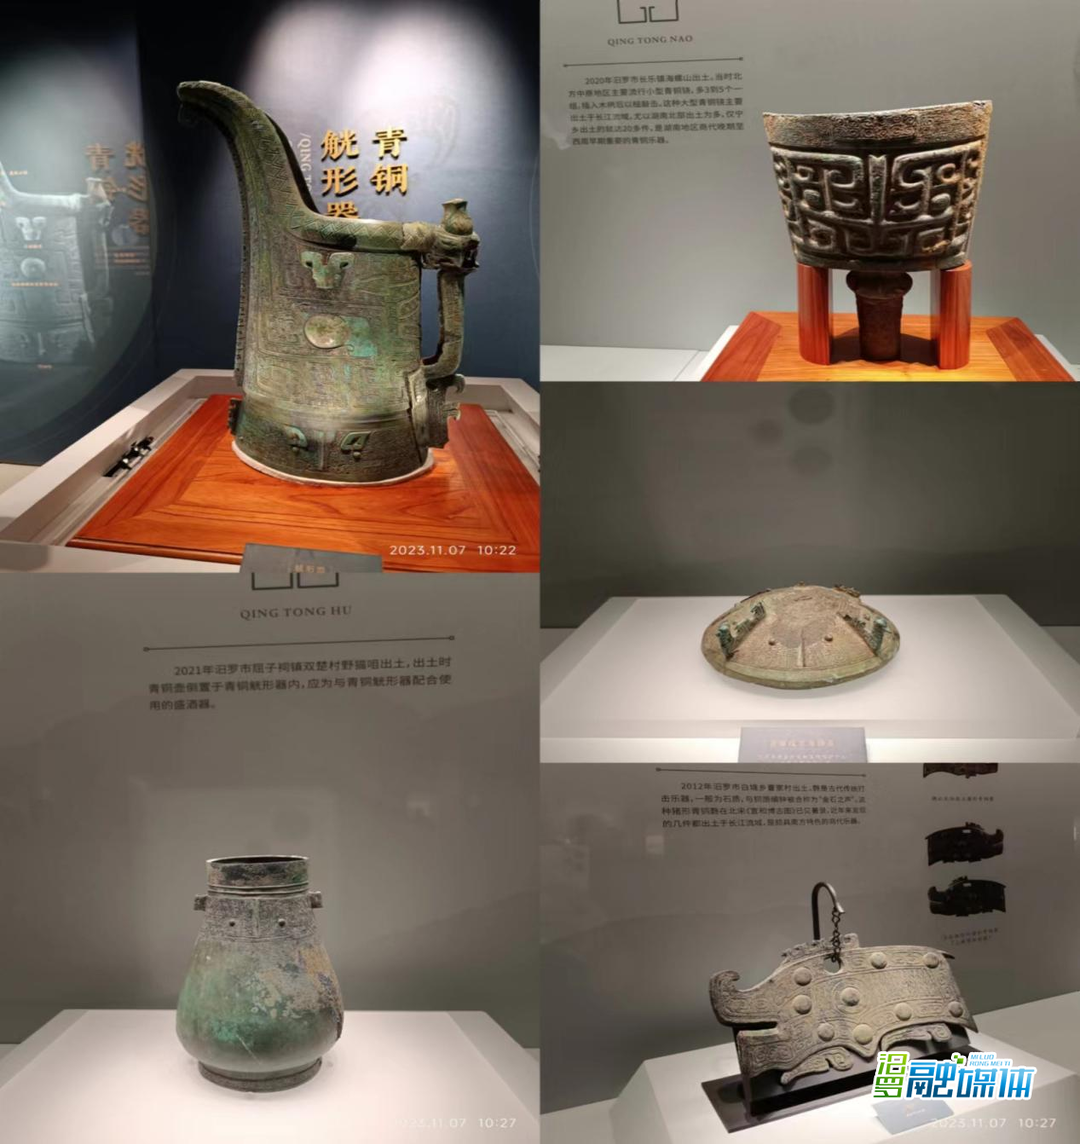 出土后首度亮相 汨罗文物在湖南新发现商代南方青铜器展上“C位”出道